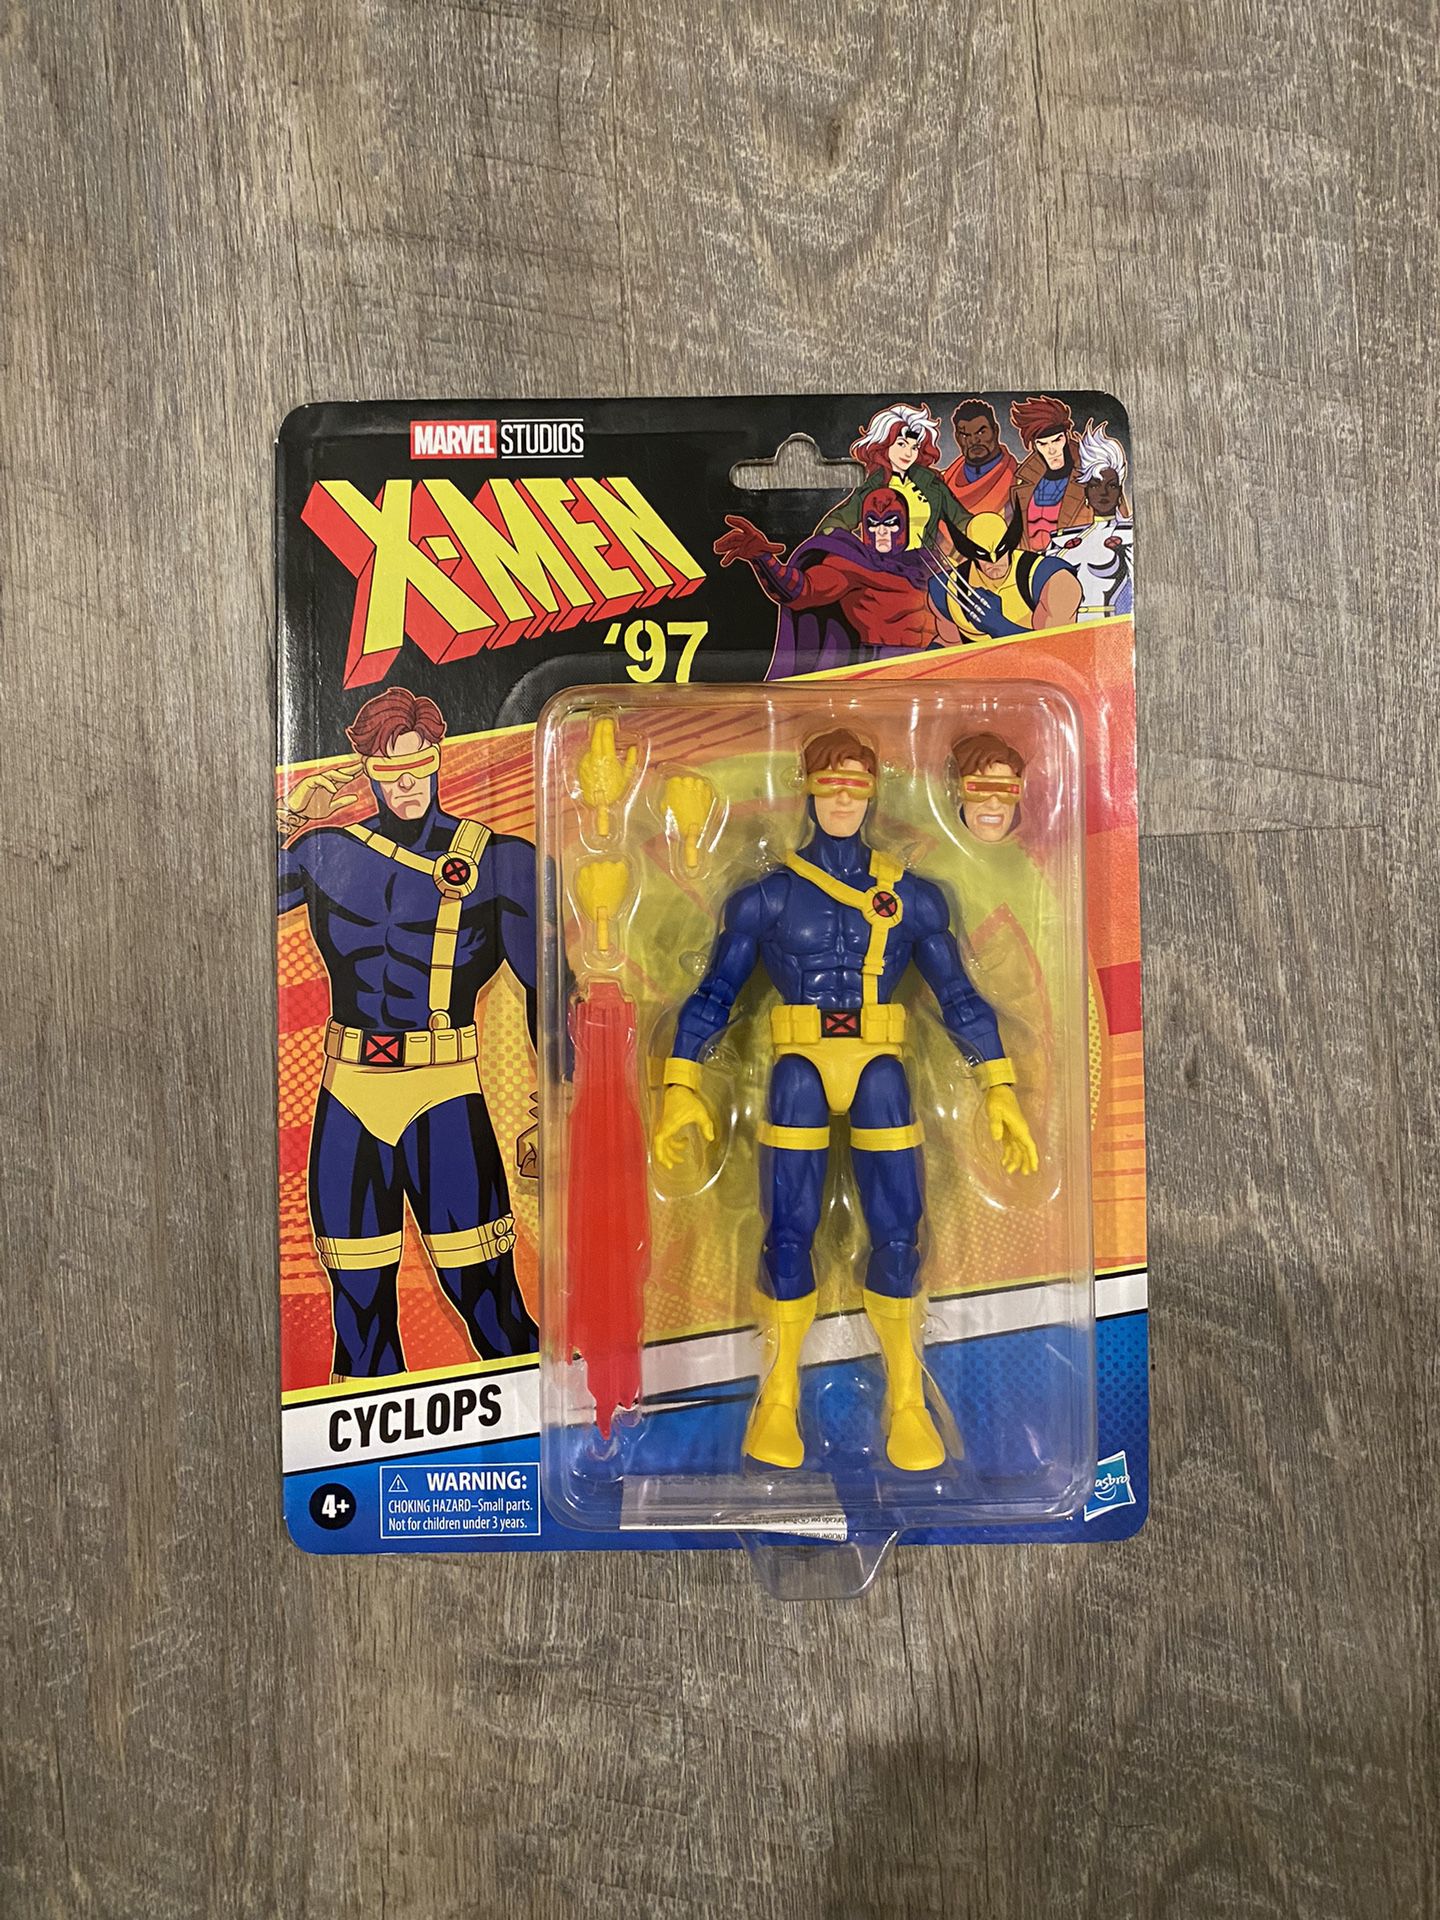 In Hand, Brand New, Never Opened Marvel Legends - X-Men 97 - Cyclops - 6” Action Figure